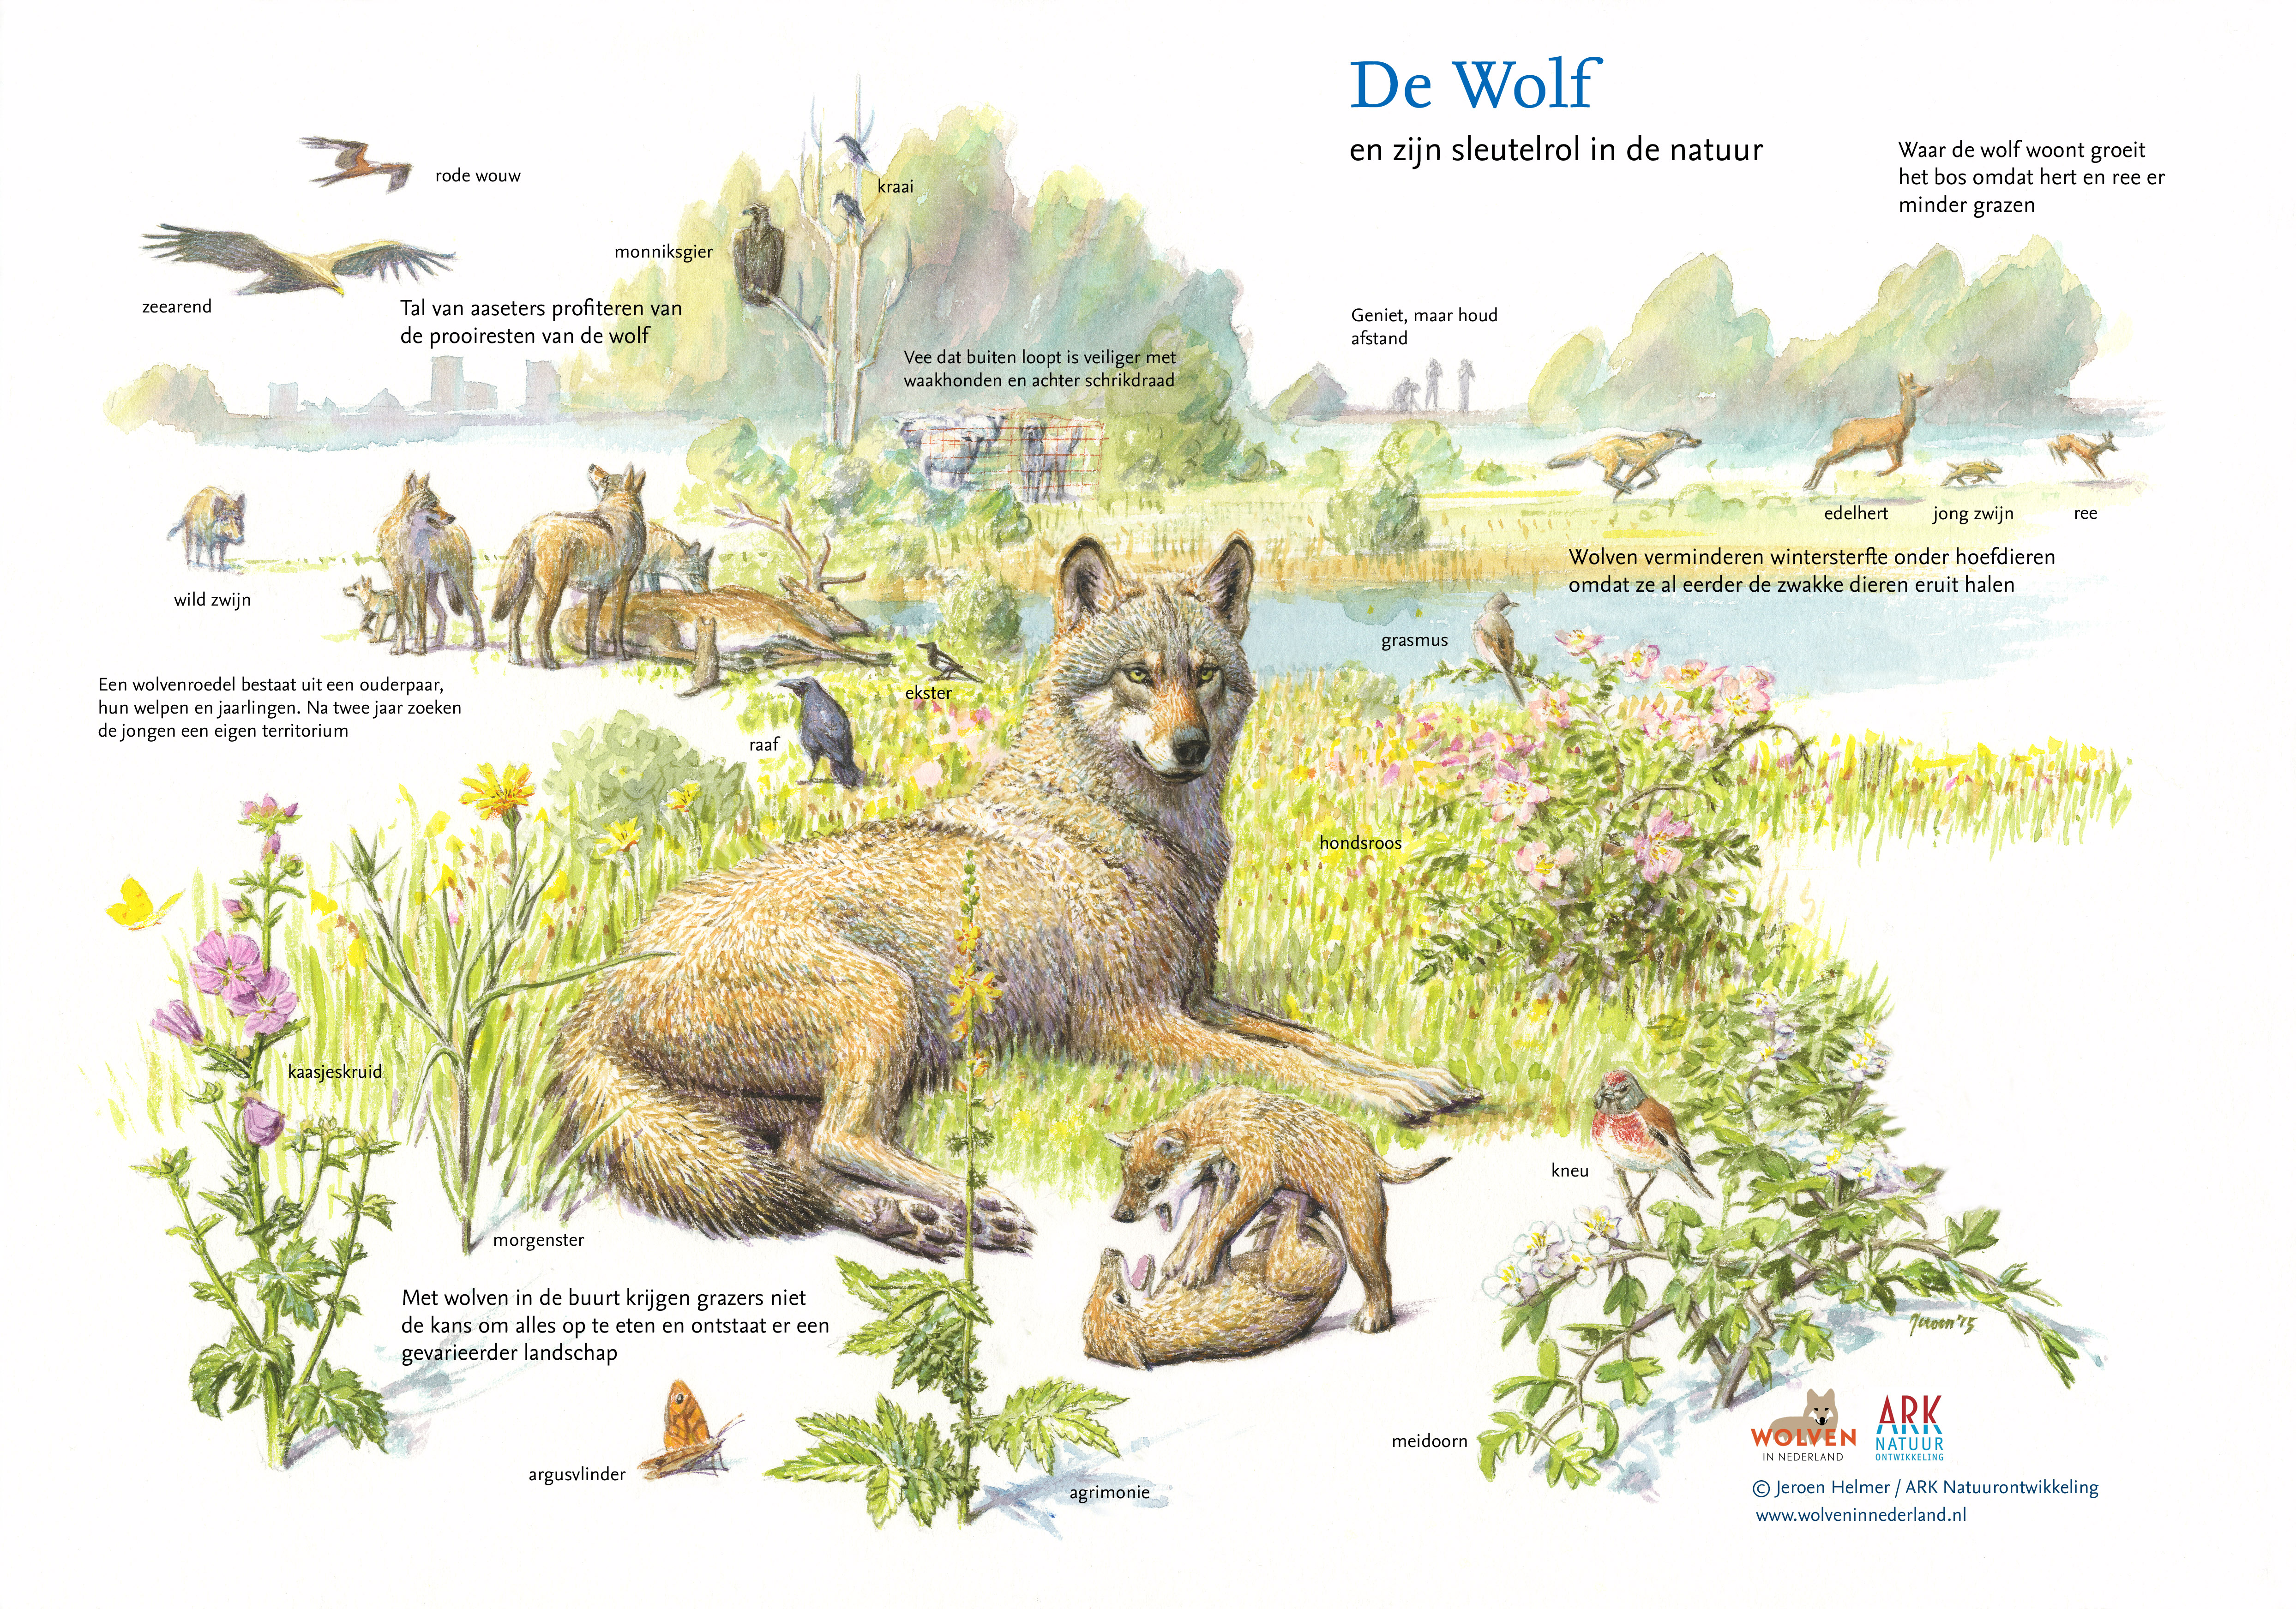 De wolf speelt een belangrijke rol in de natuur.